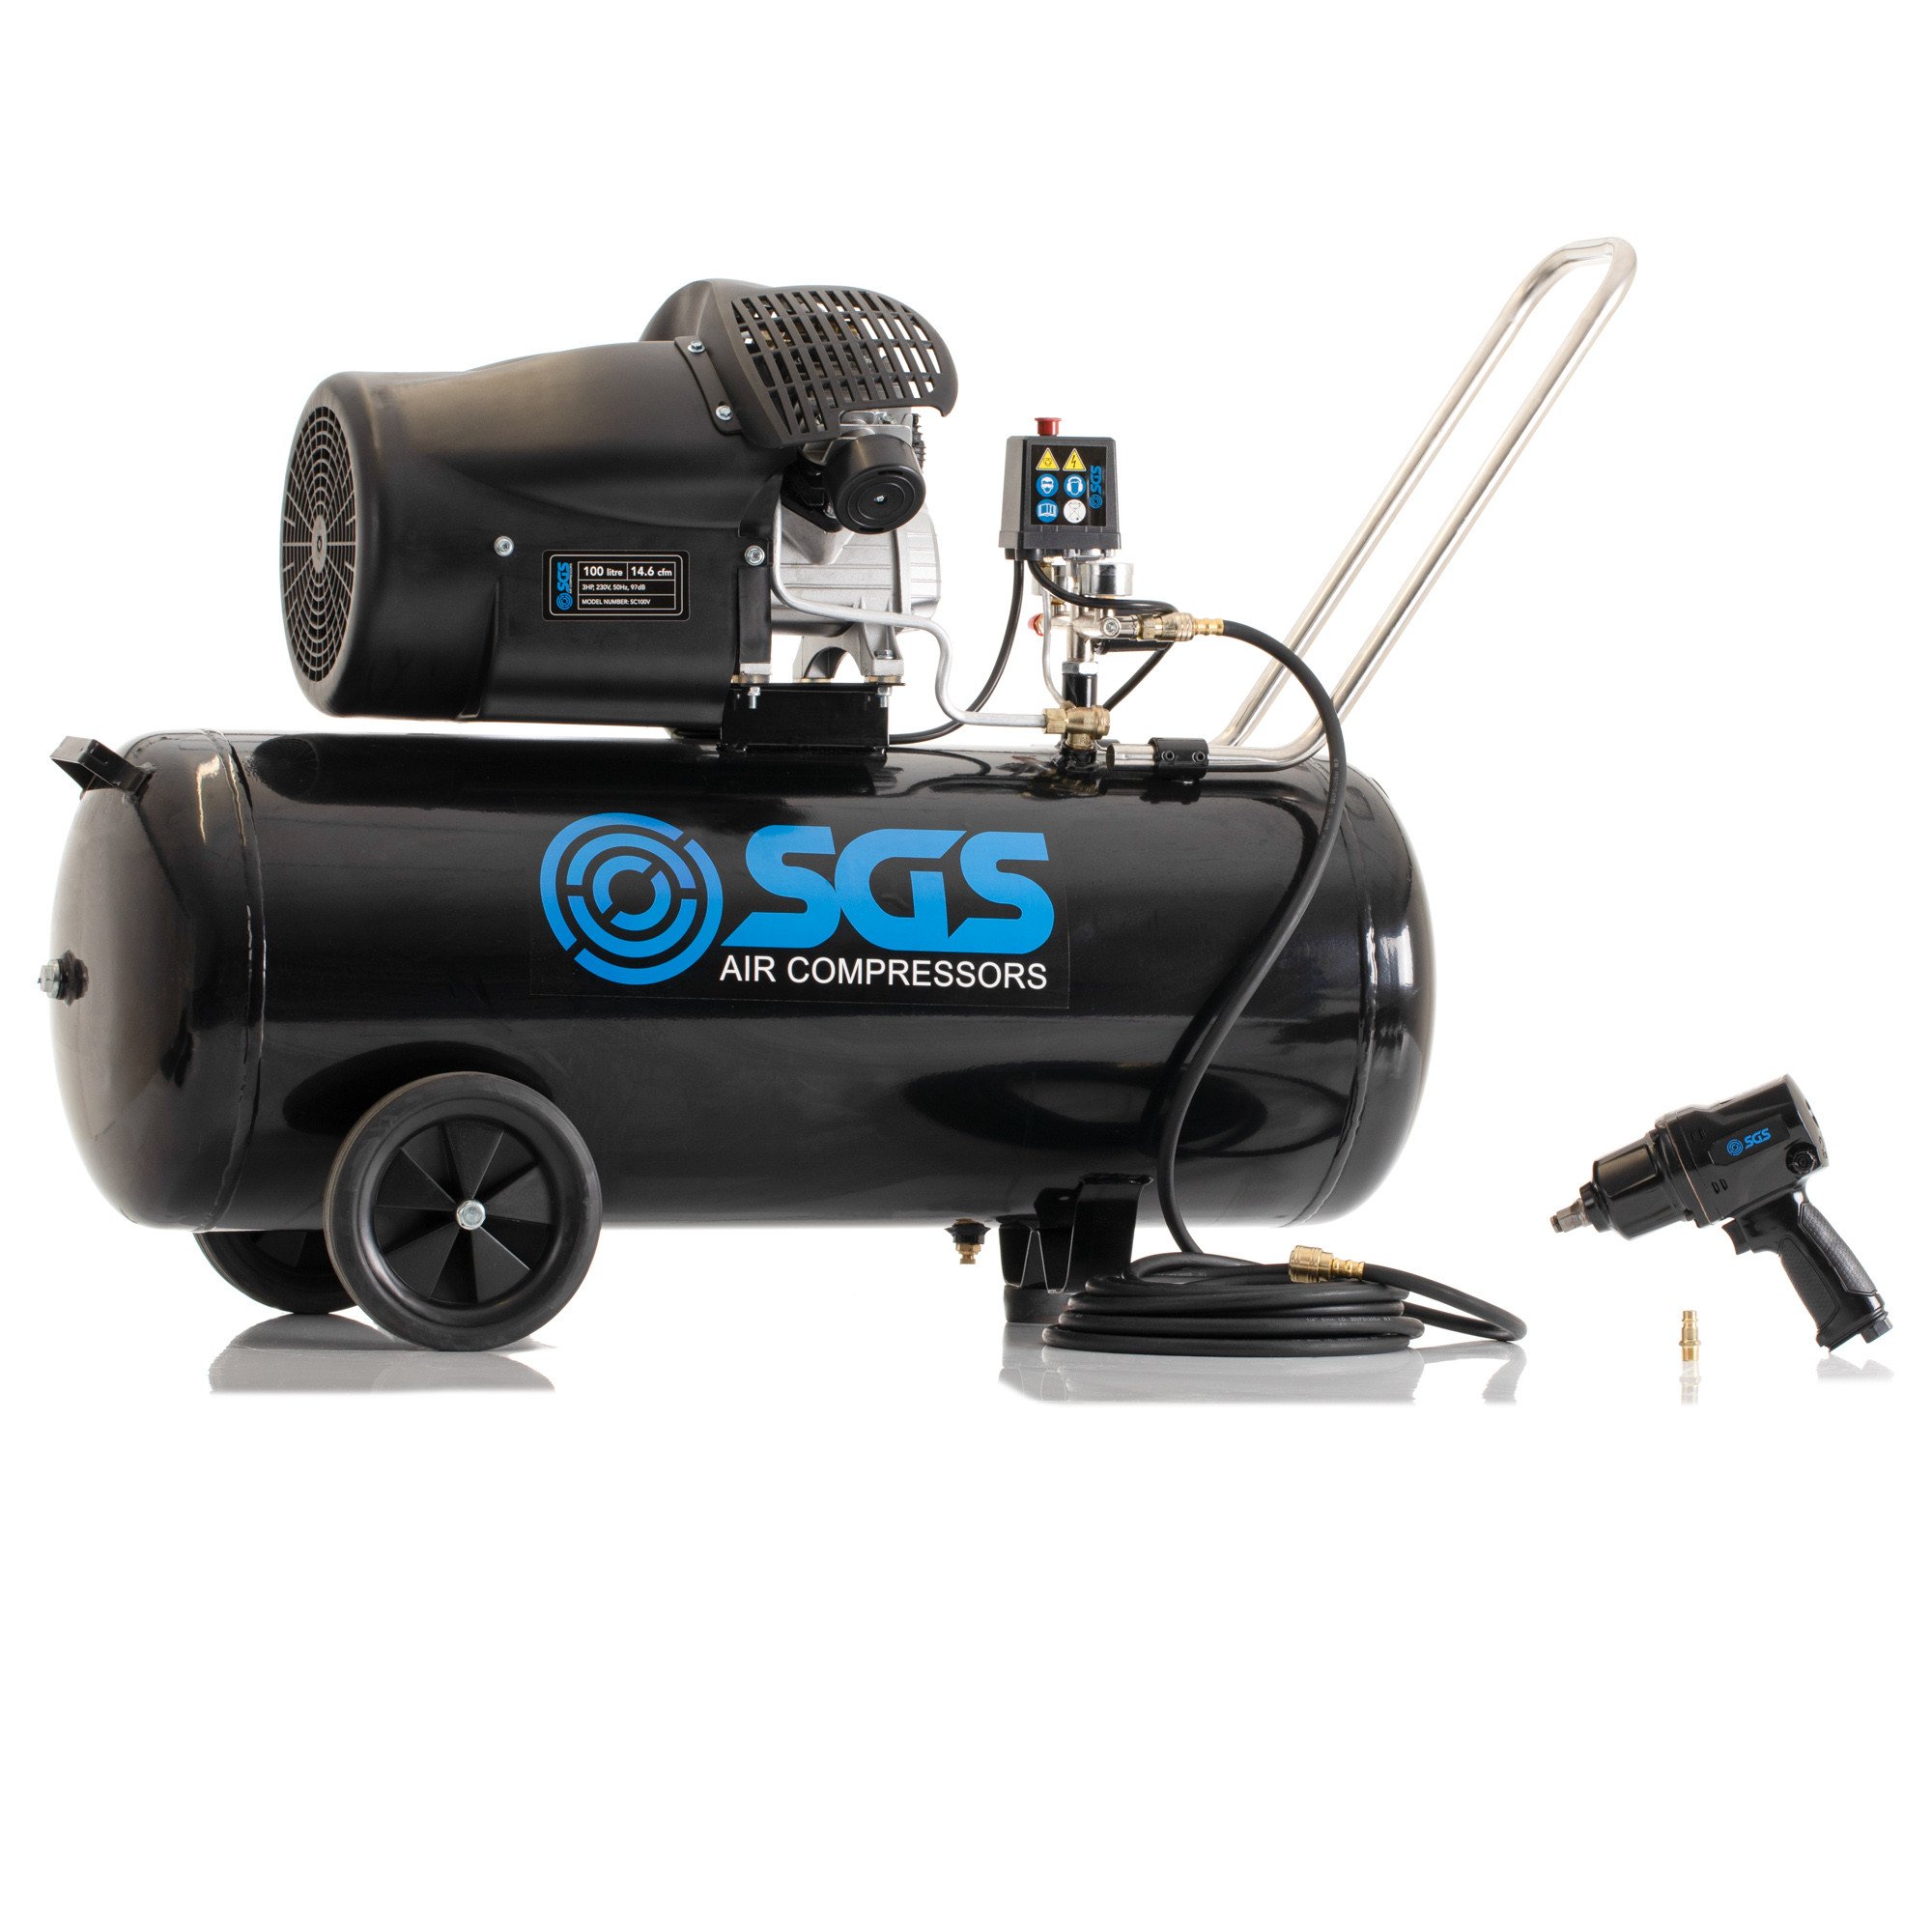 SGS 100升直接驱动空气压缩机和880Nm空气冲击扳手套件- 14.6CFM 3.0马力100L